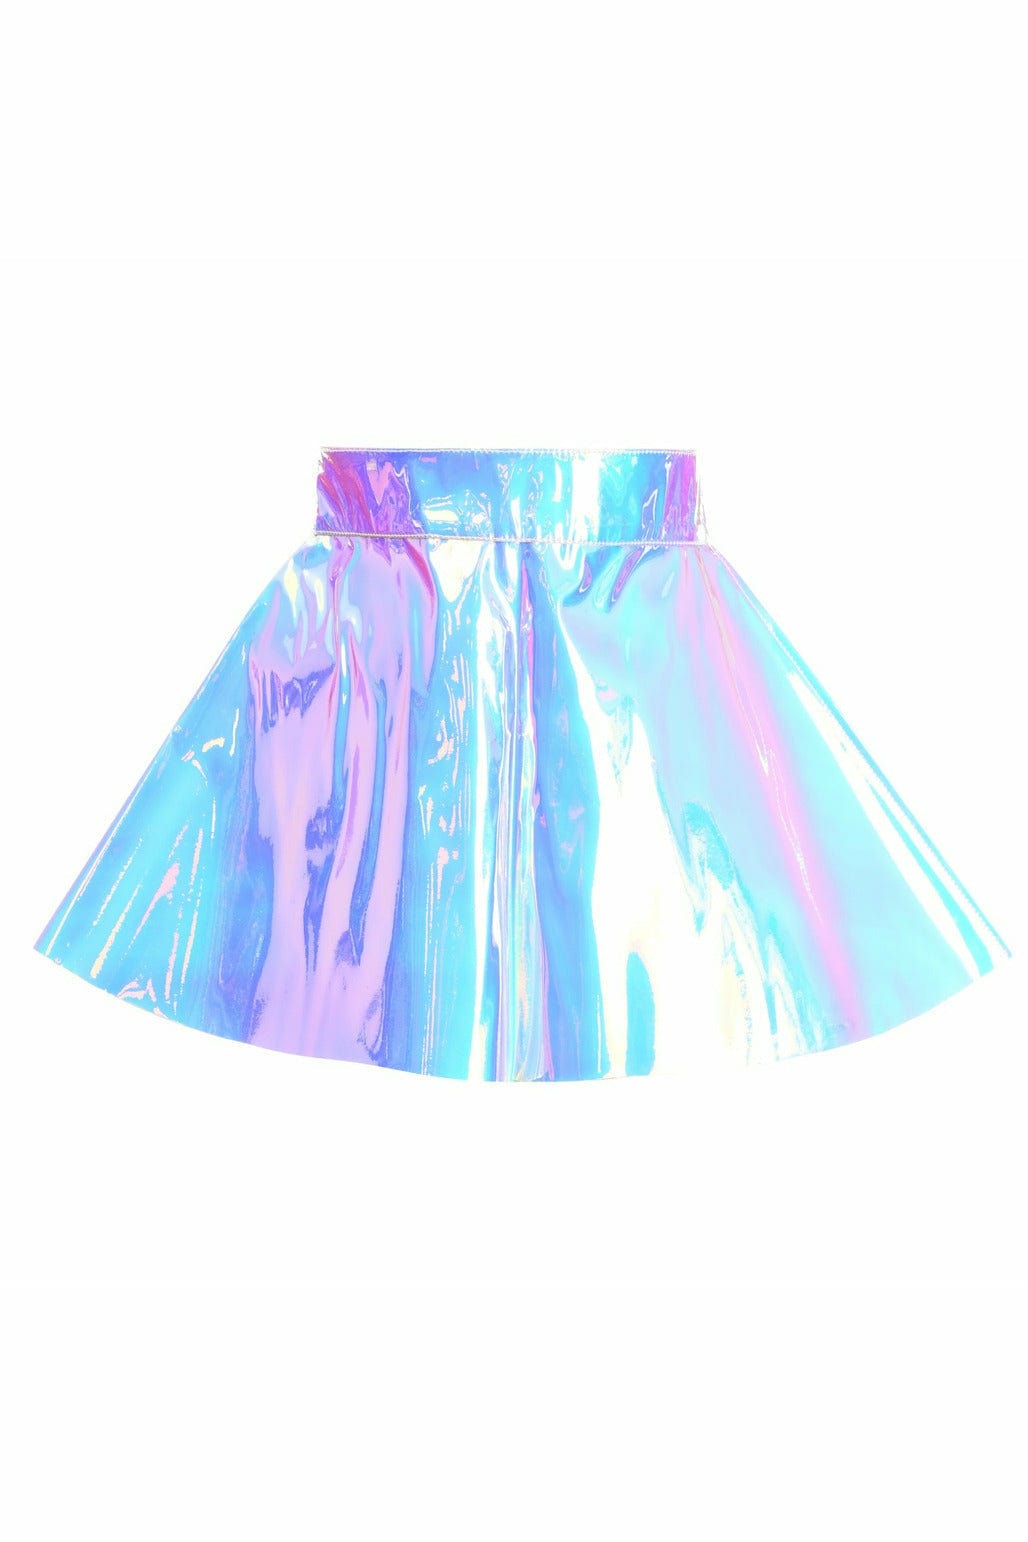 Blue with Purple Hologram Skater Skirt Musotica.com